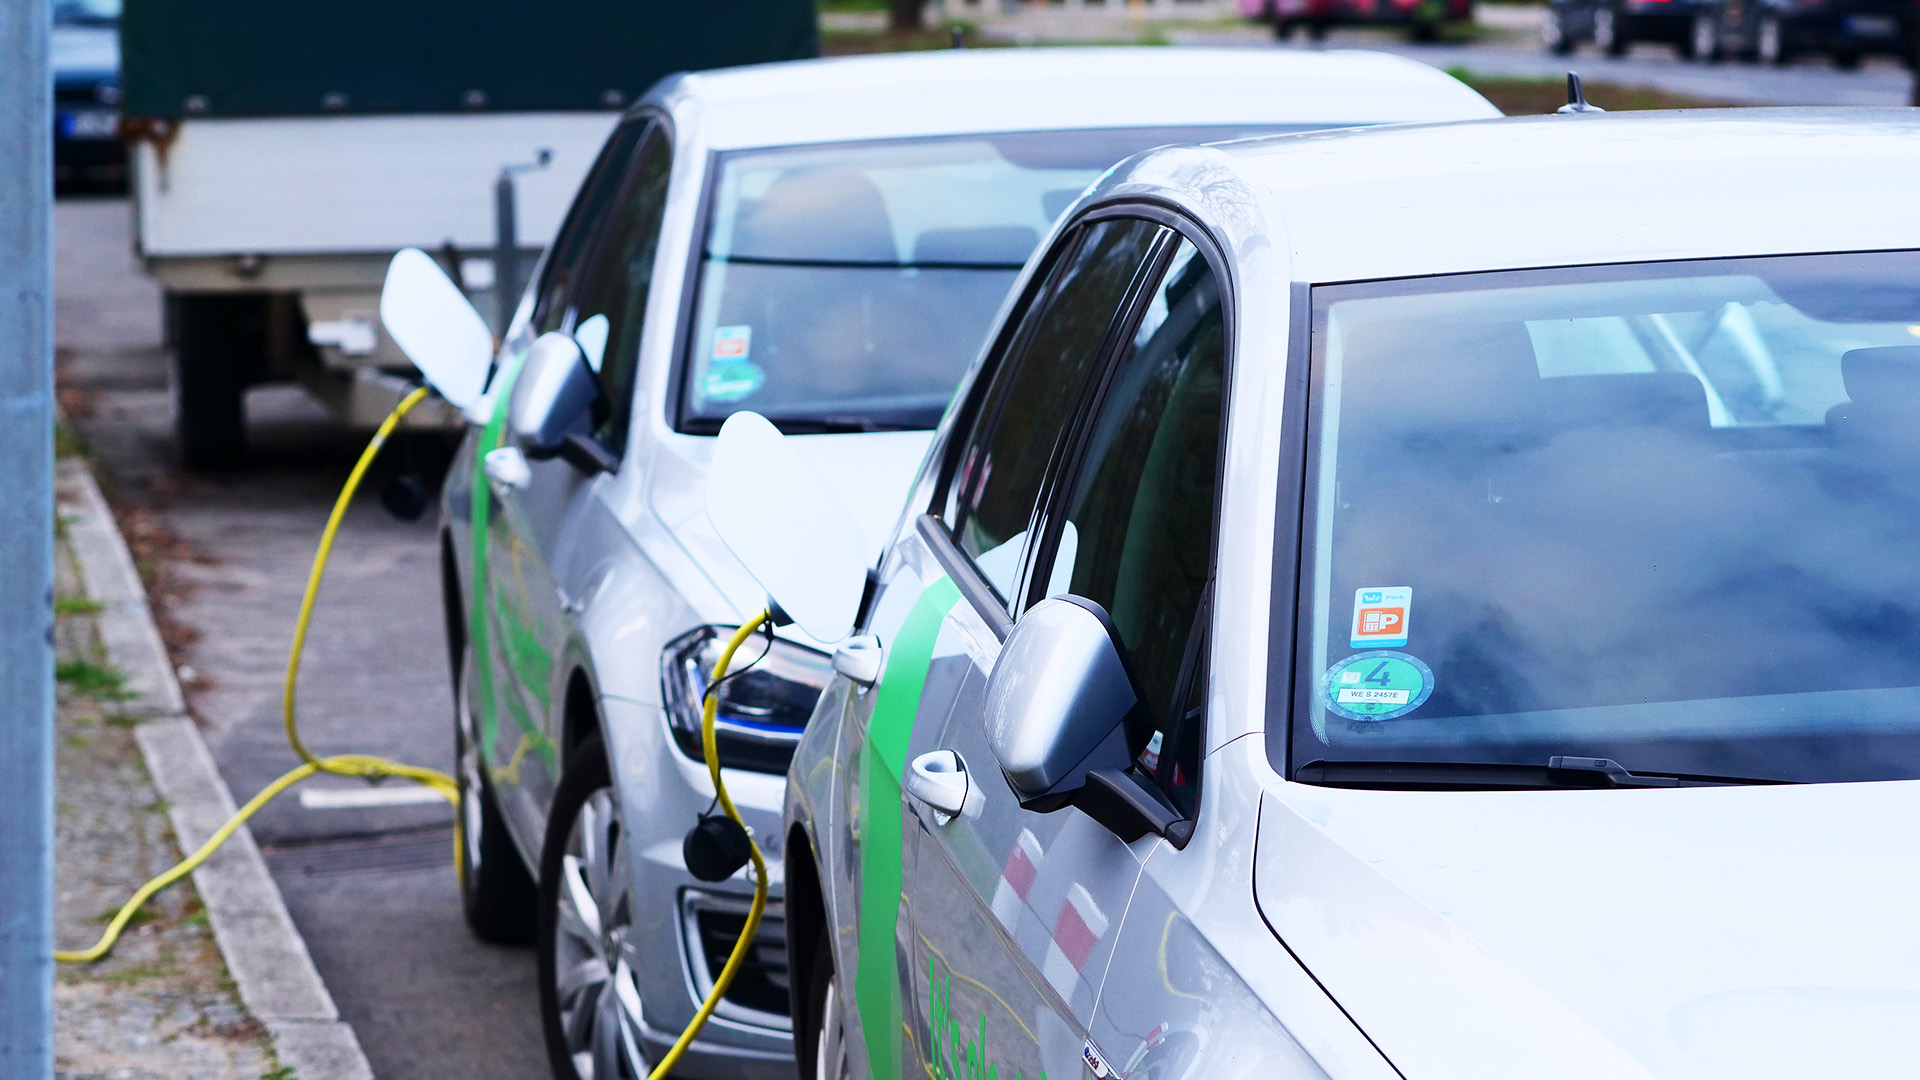 Elektroautos von "We share" stehen an einer Ladesaeule fuer E-Autos und werden aufgeladen.(Quelle:dpa/W.Steinberg)